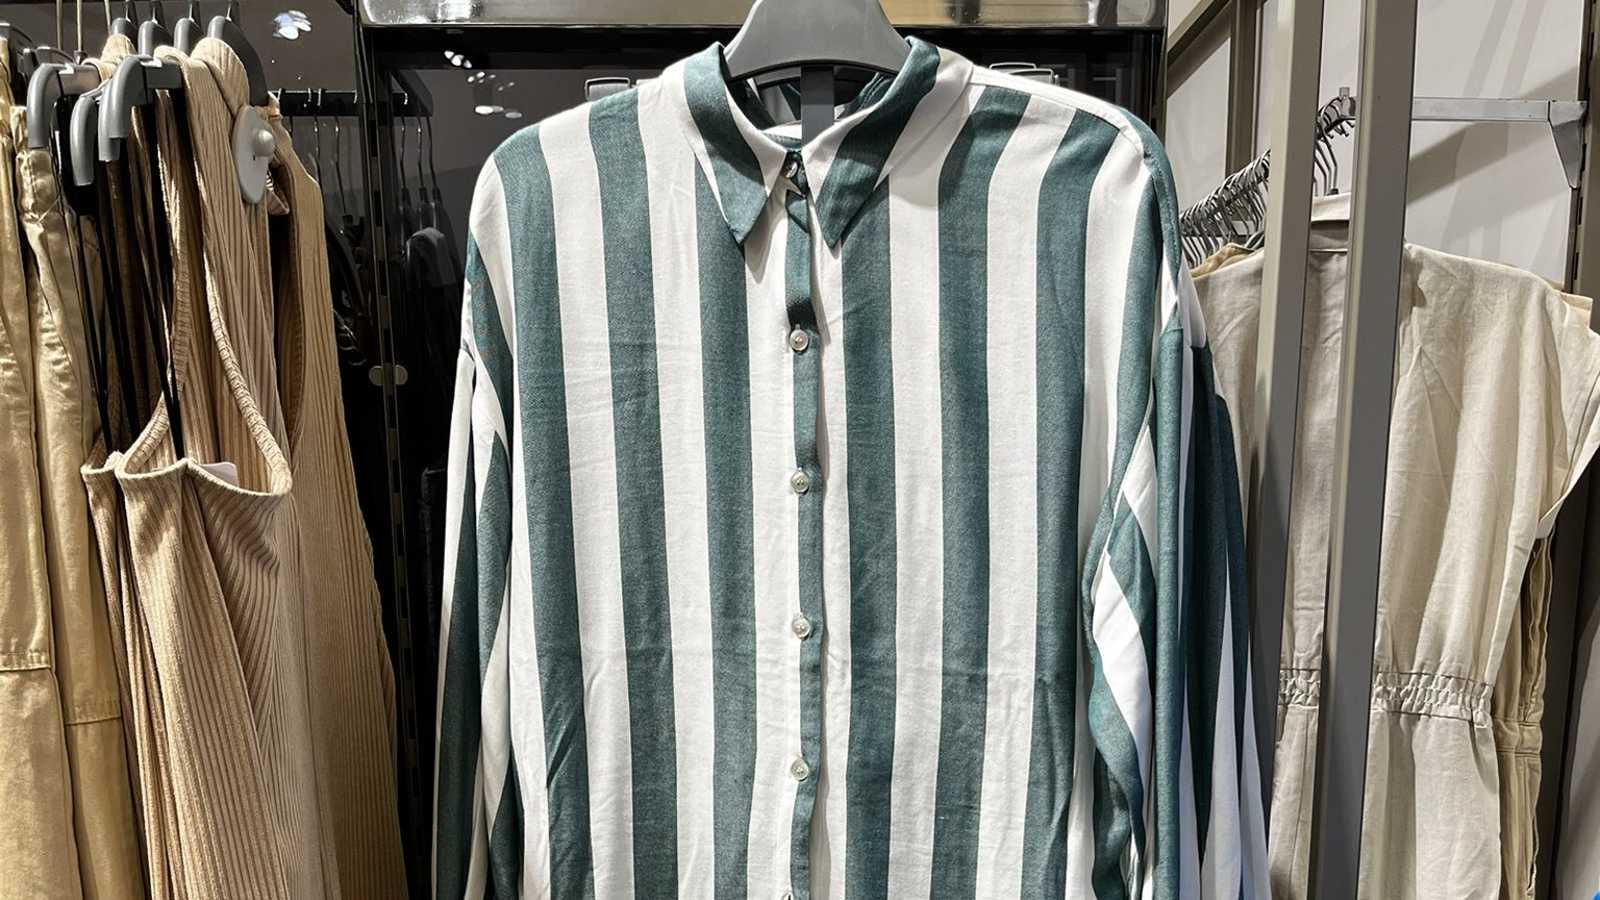 Conjunto composto por uma camisa e uma calça listrados nas cores branca e azul foi associado por internautas aos uniformes dos campos de concentração nazistas